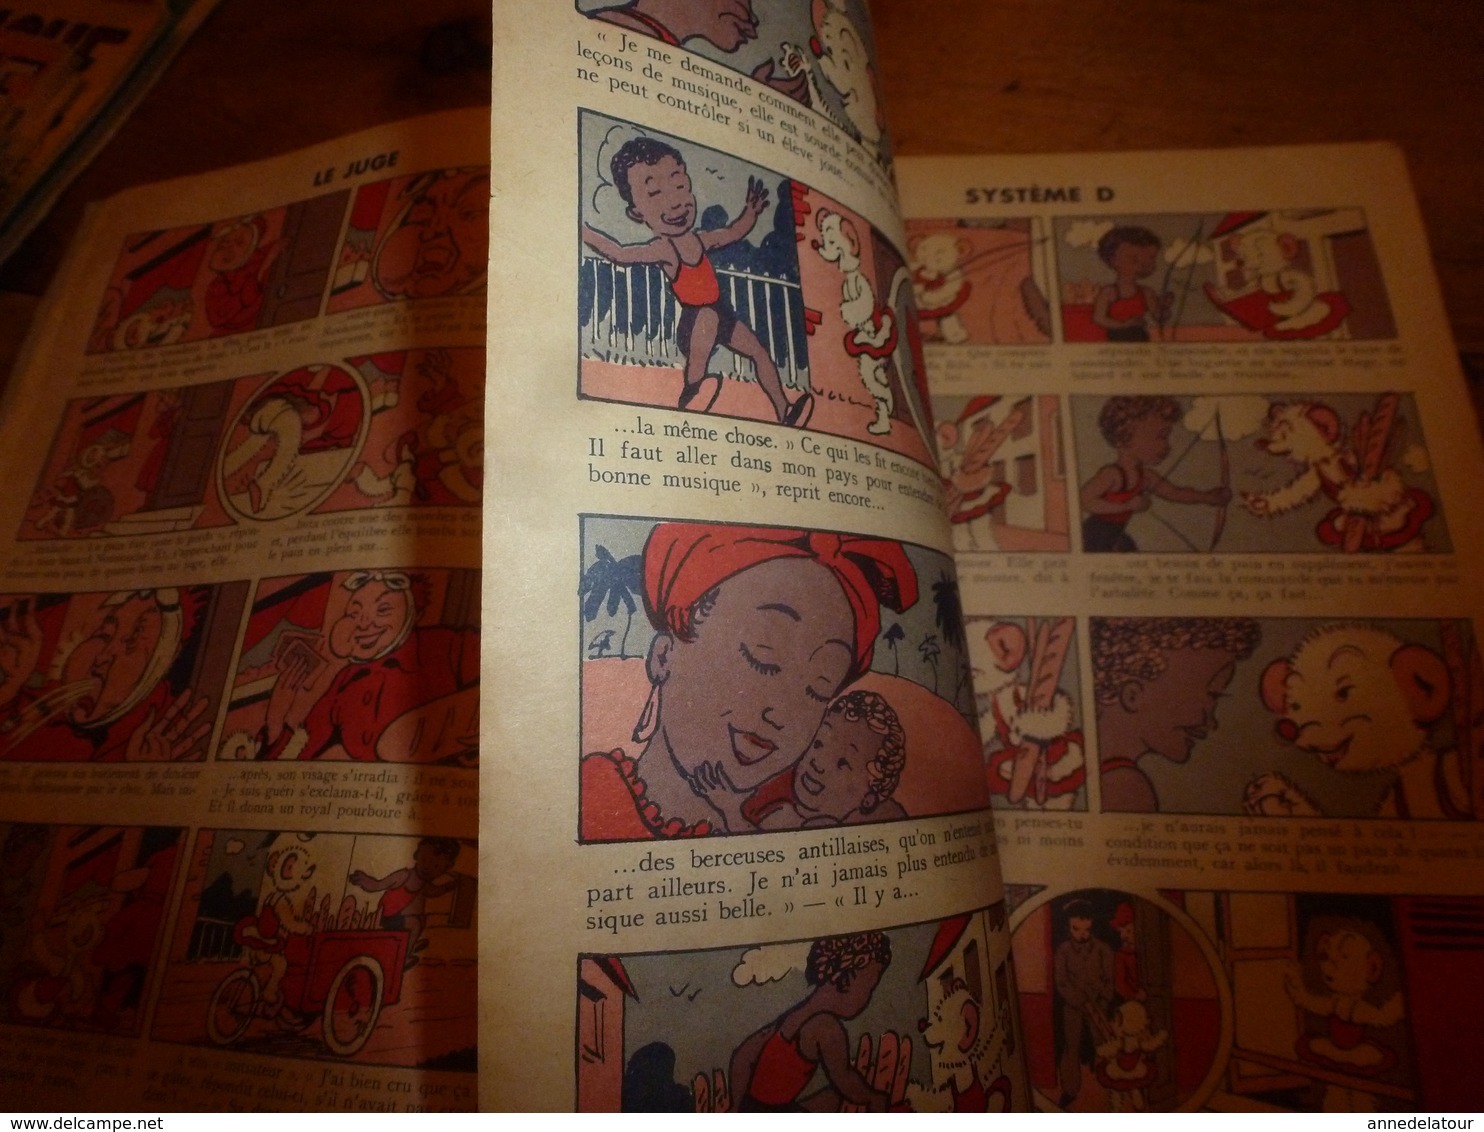 1954 NOUNOUCHE  boulangère  "au croissant chaud",   texte et dessins de DURST